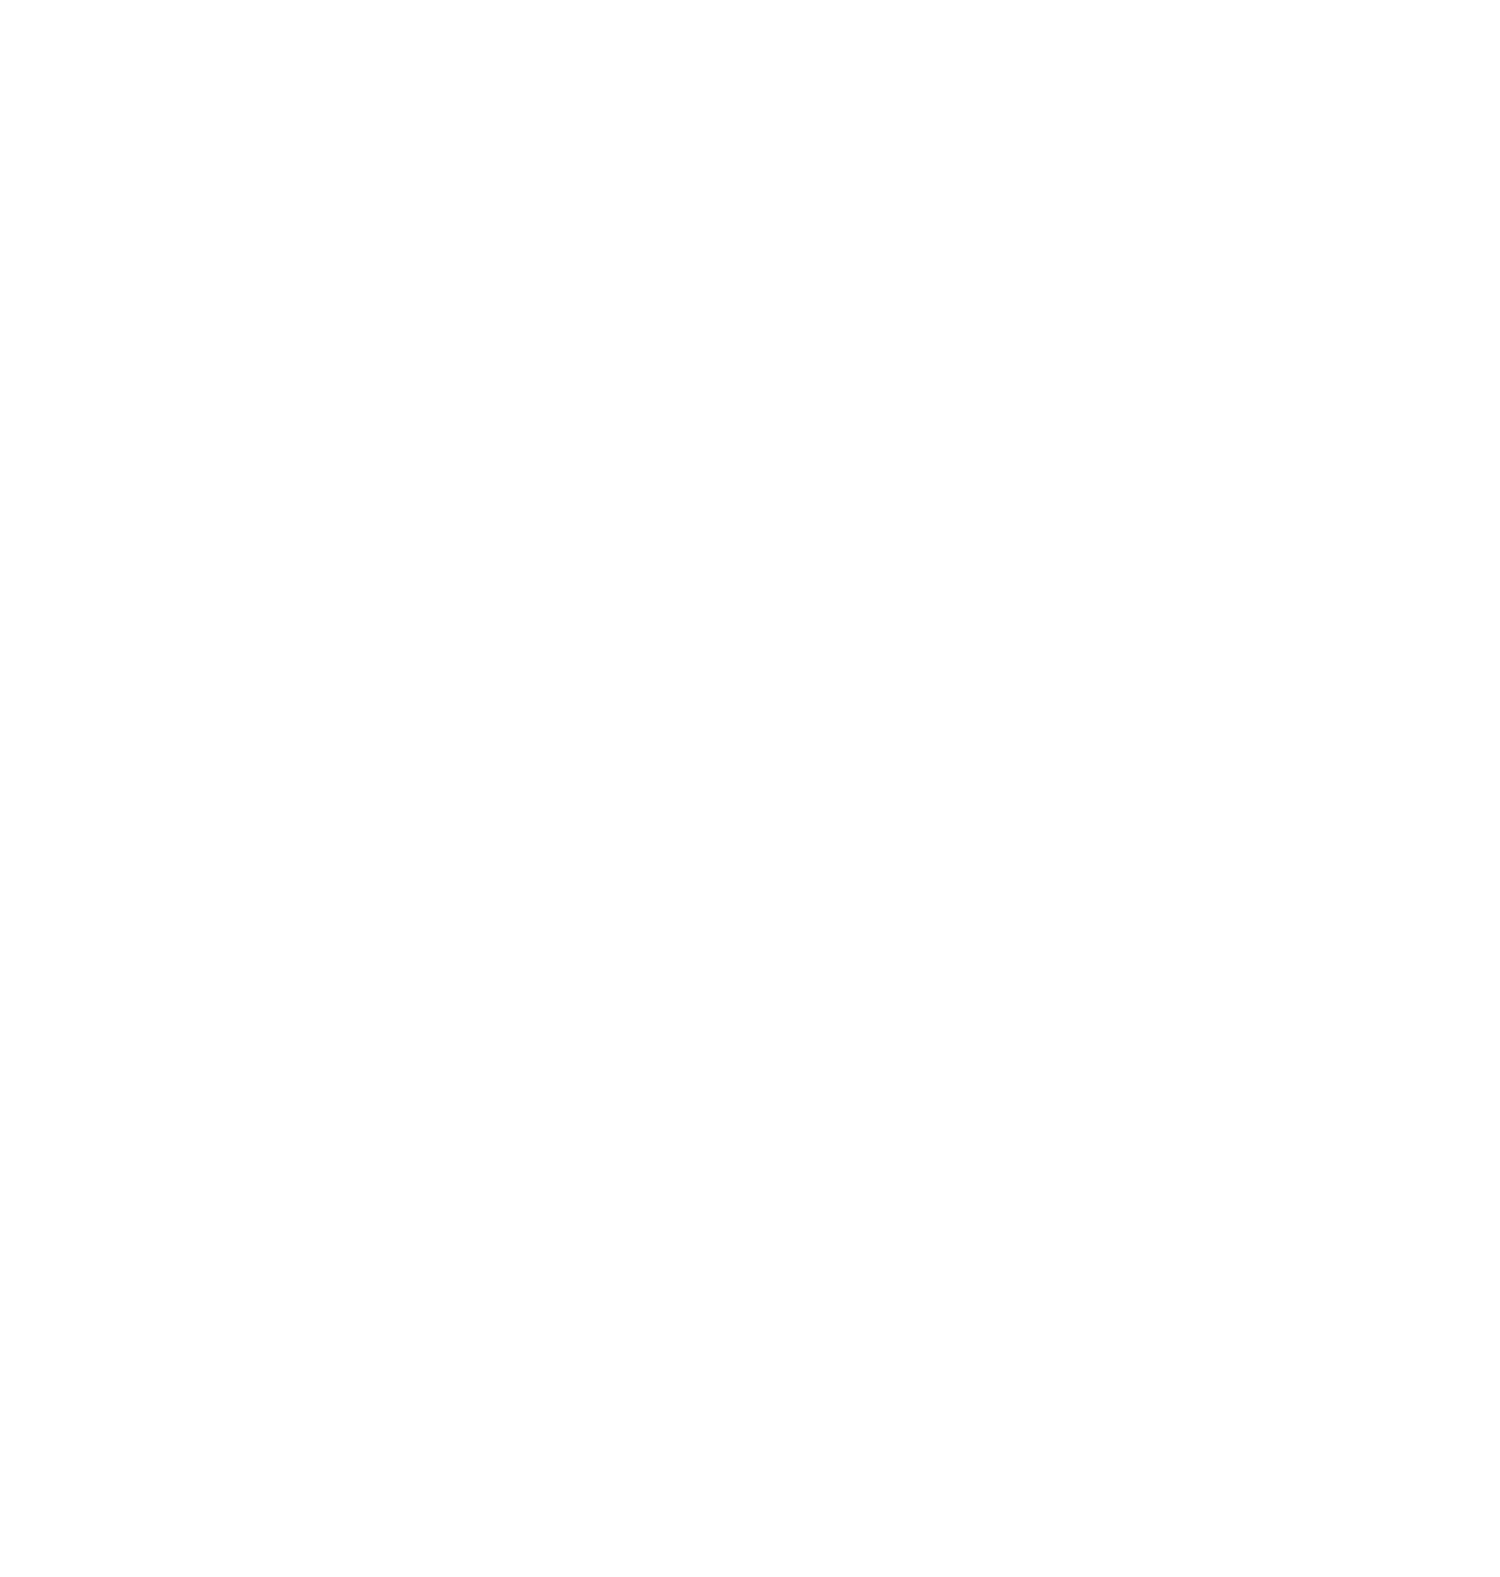 Beau and Arrow Films